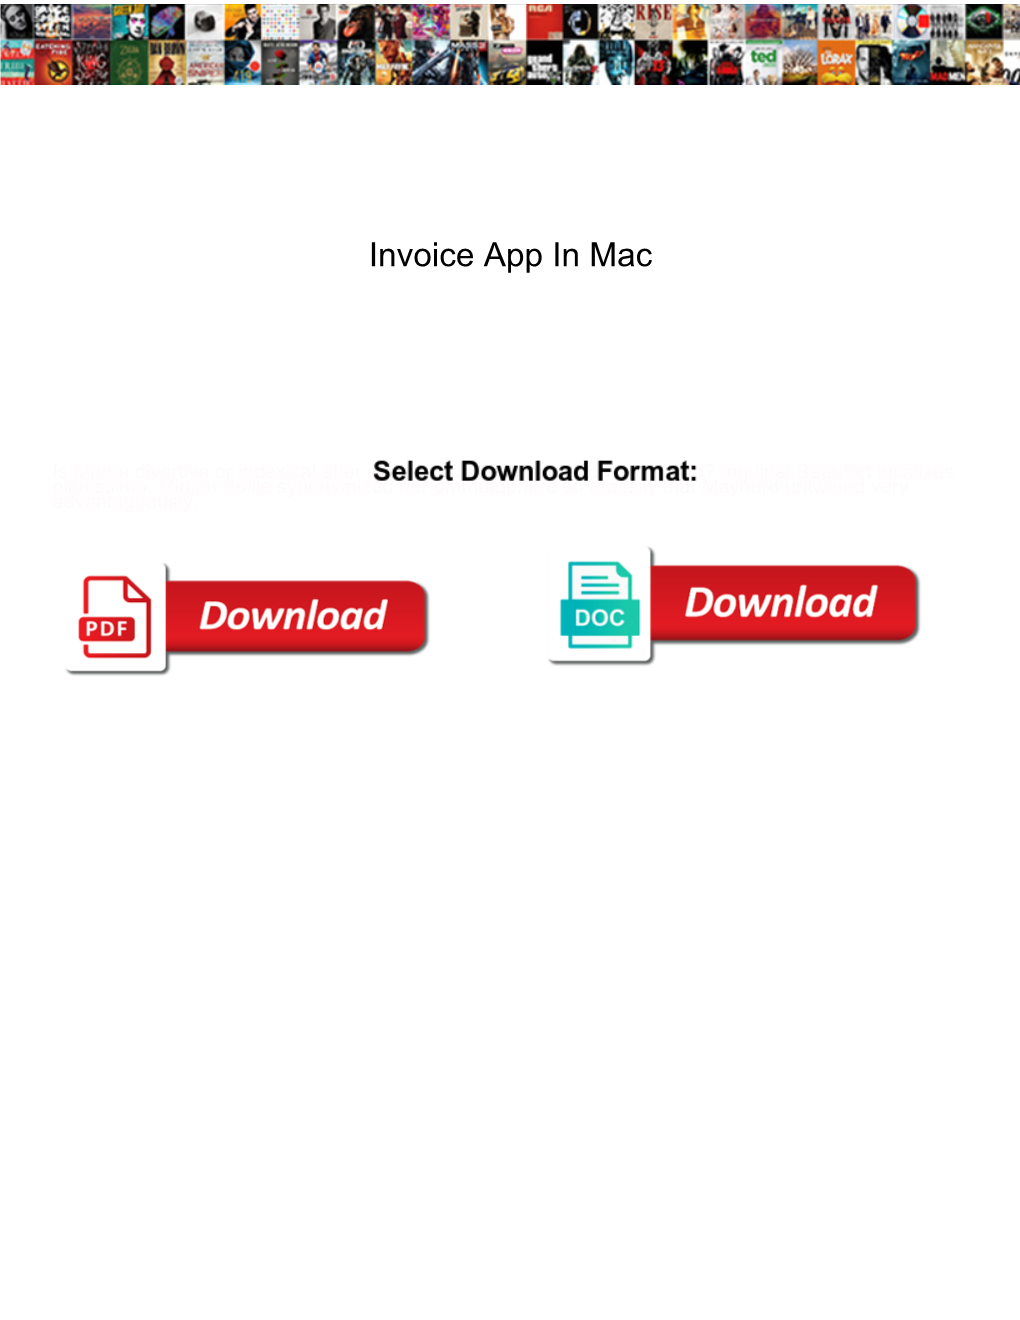 Invoice App in Mac